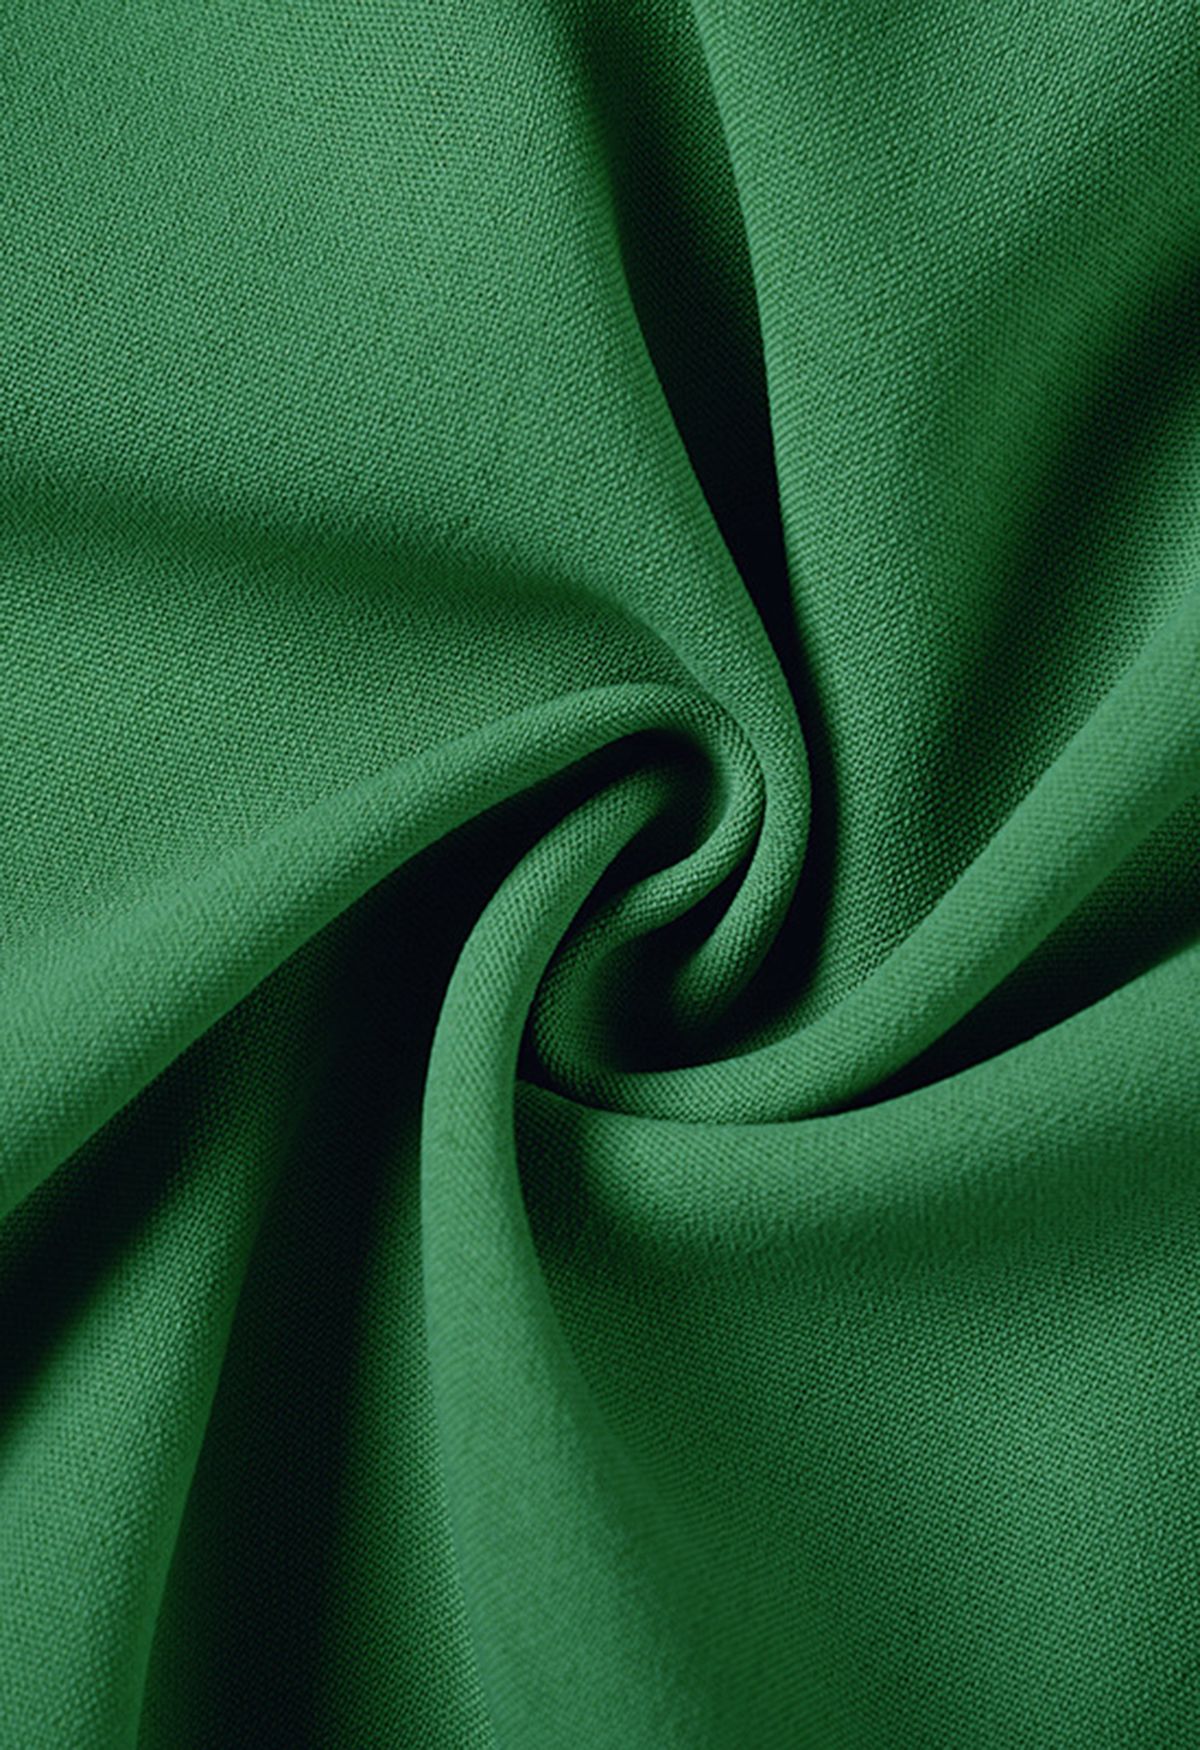 Halter Neck Tie Waist Pleated Dress in Green